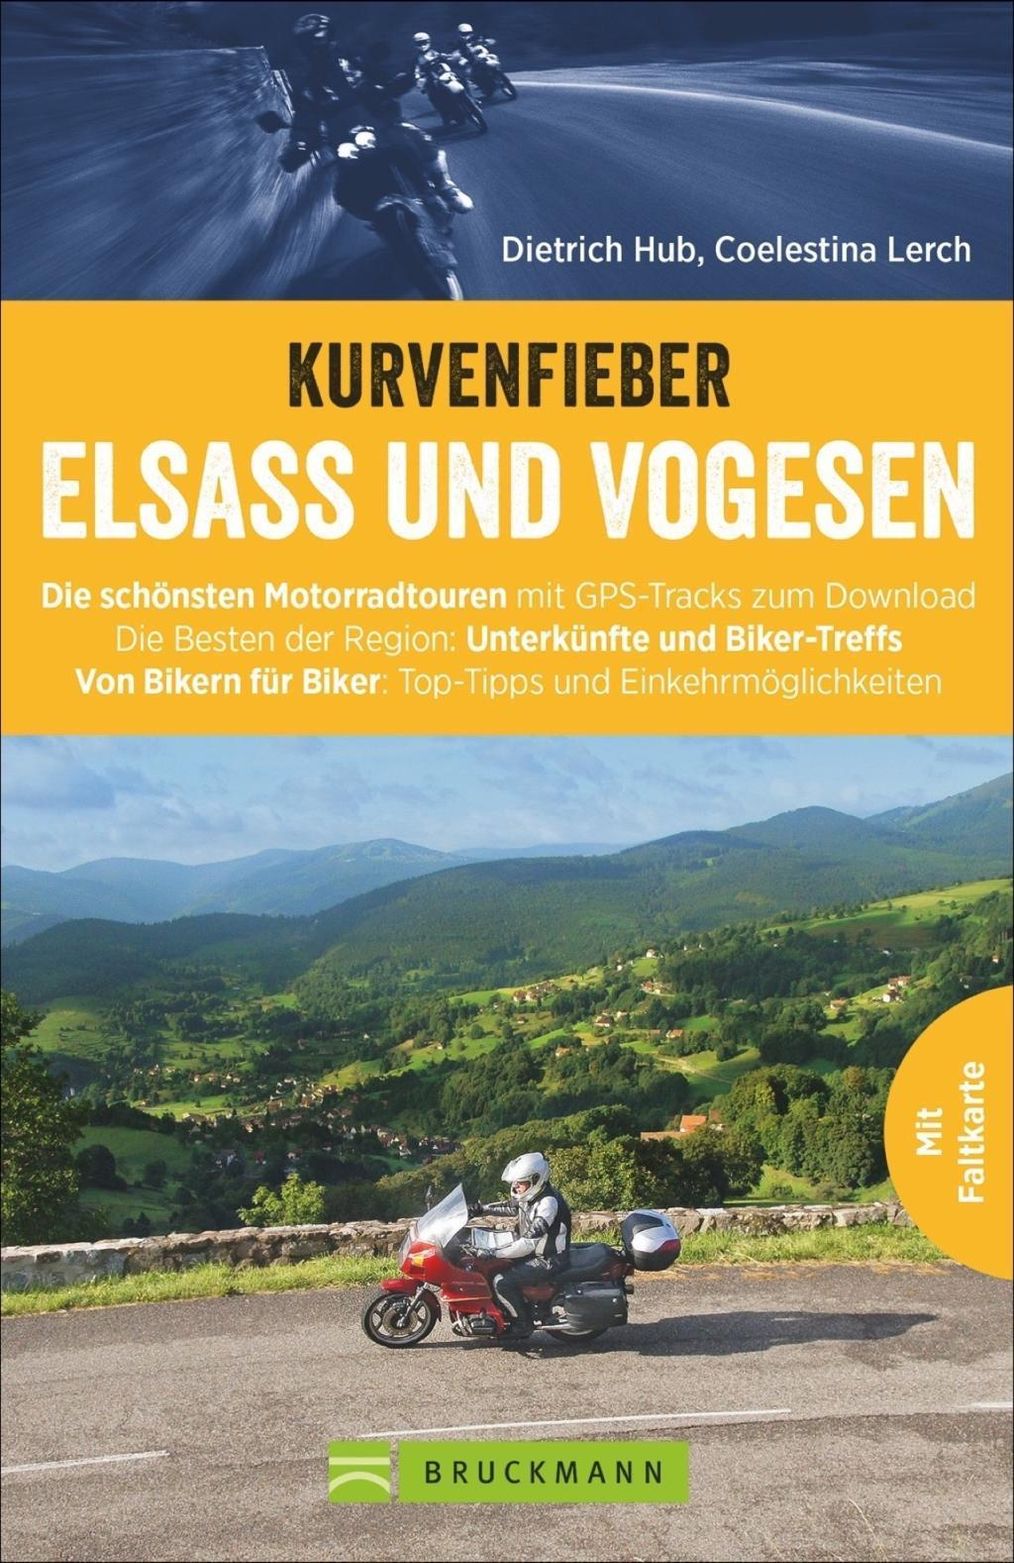 Kurvenfieber Elsass und Vogesen Buch versandkostenfrei bei Weltbild.ch